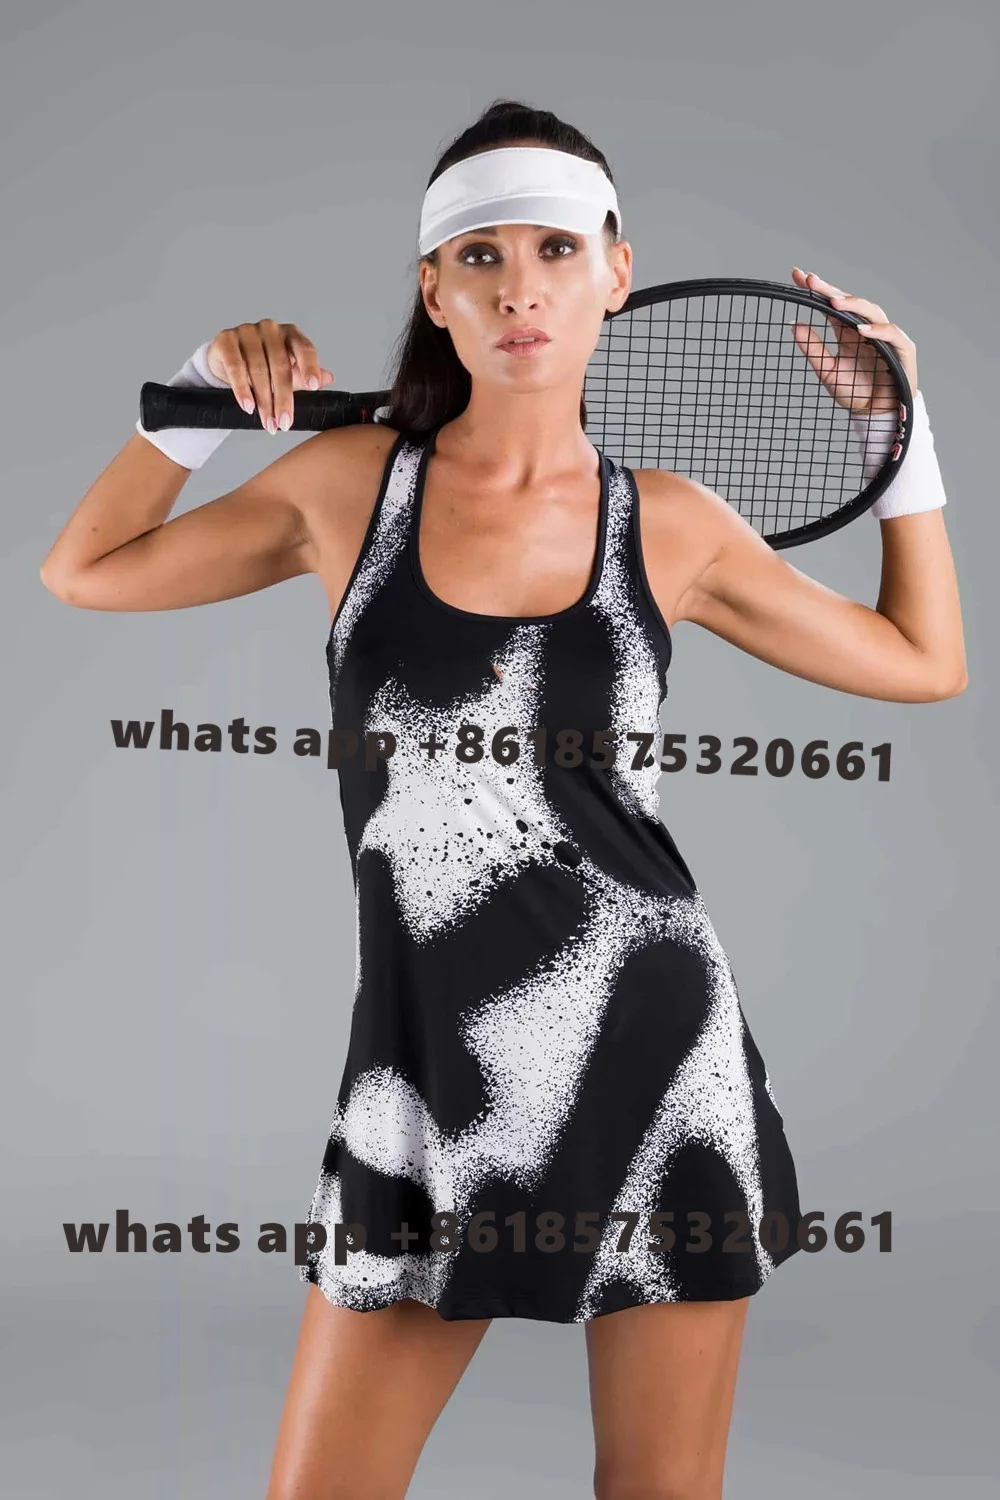 Vestido Tenista Feminino Beach Tennis Dress With Shorts Suit Summer Sleeveless Tennis Volleyball Golf Sport Dress Short Skirt